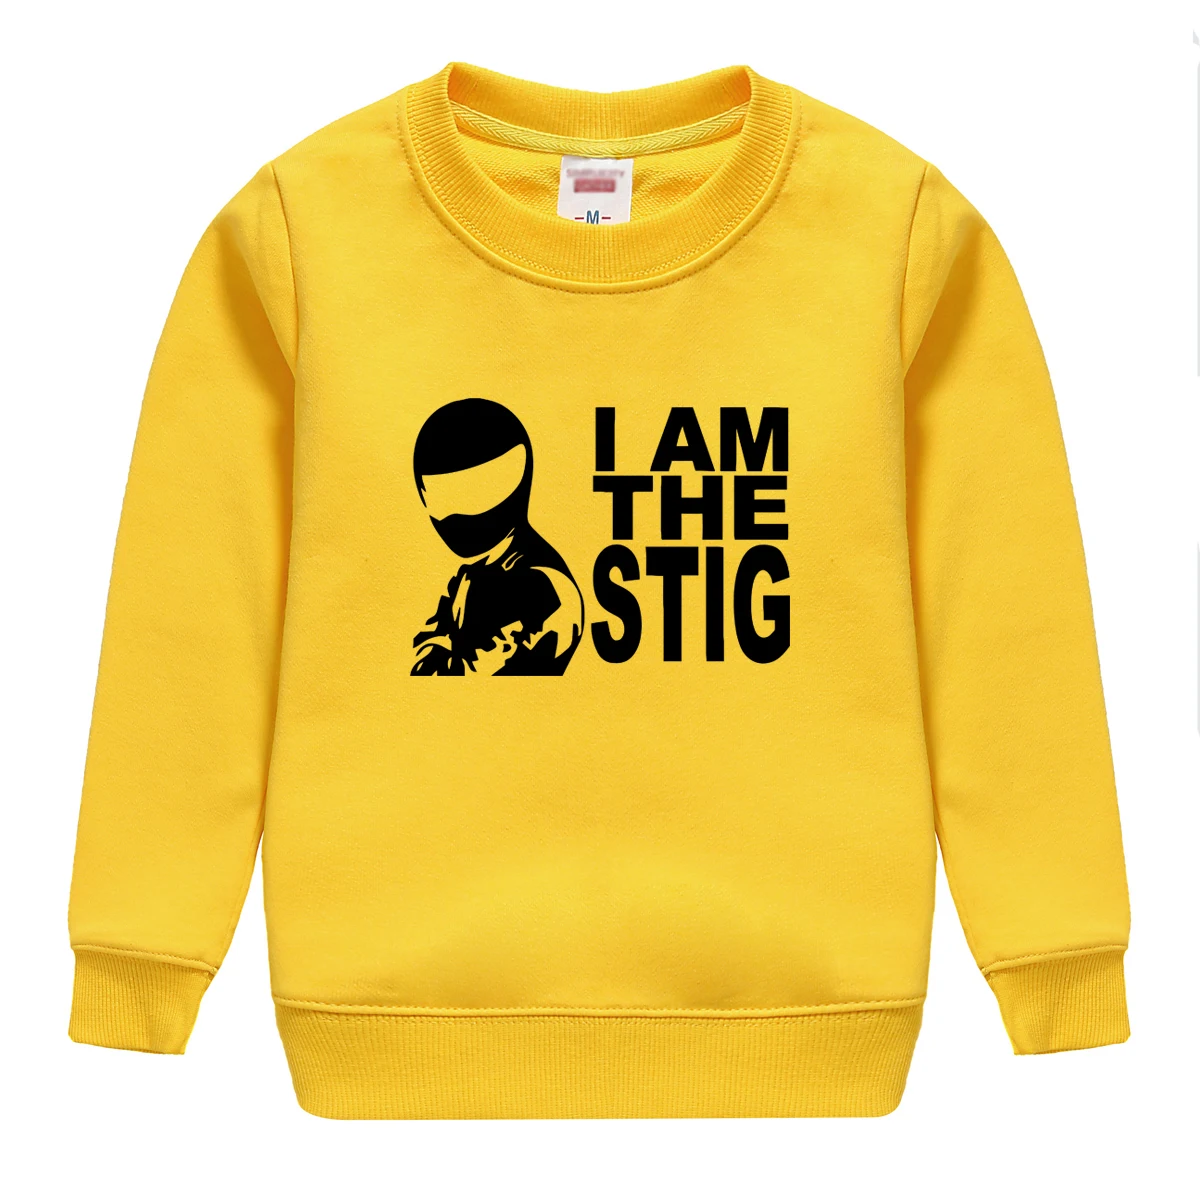 "Я STIFG" мультфильм шаблон печатной 2018 Новая мода весна осенний Свитшот пуловер с длинным рукавом с 8 видов цветов для детей